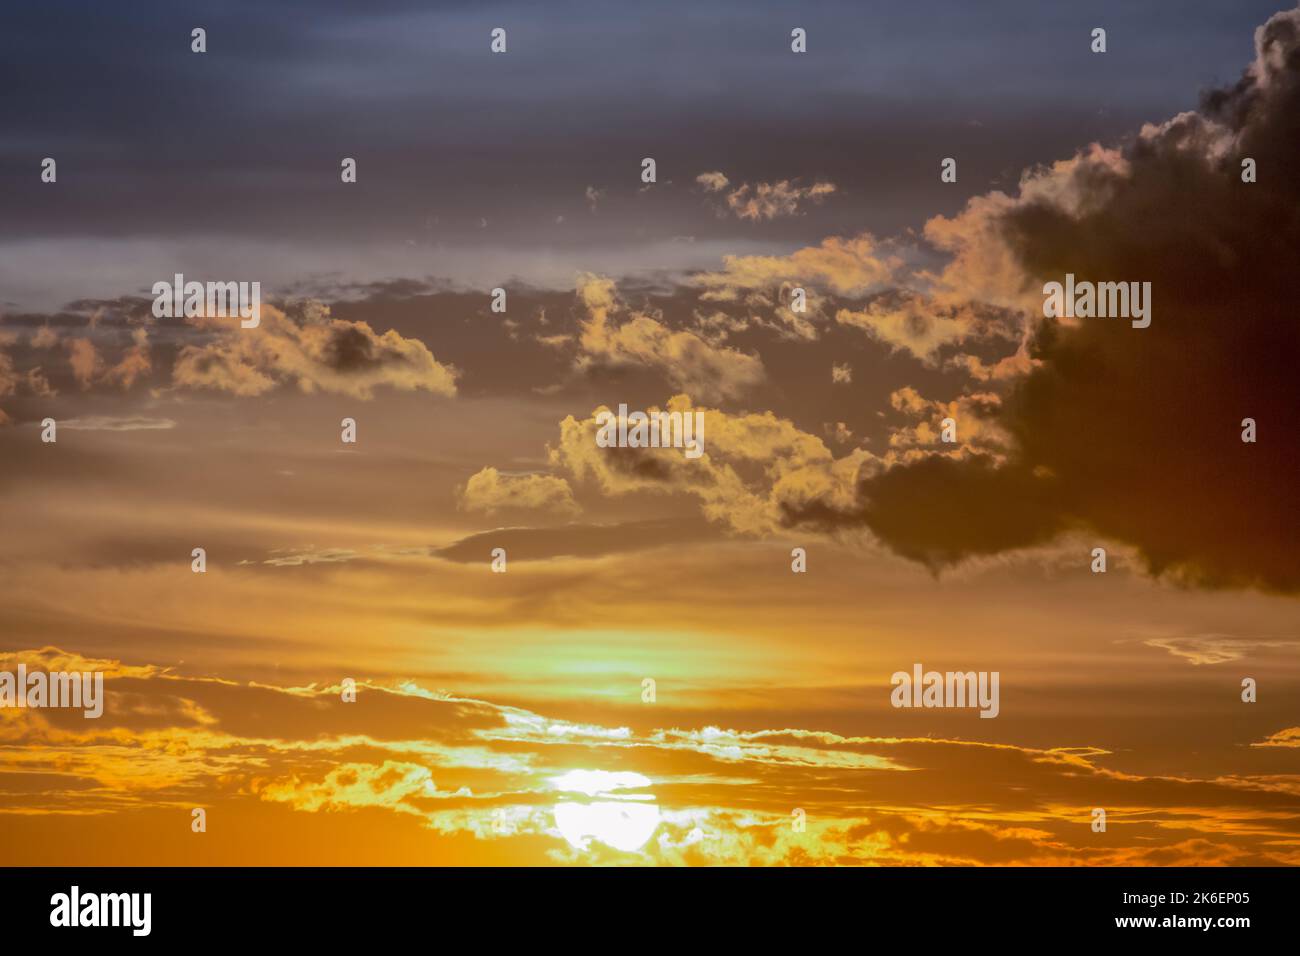 Alba cielo drammatico con nuvole in fila, paesaggio colorato Foto Stock